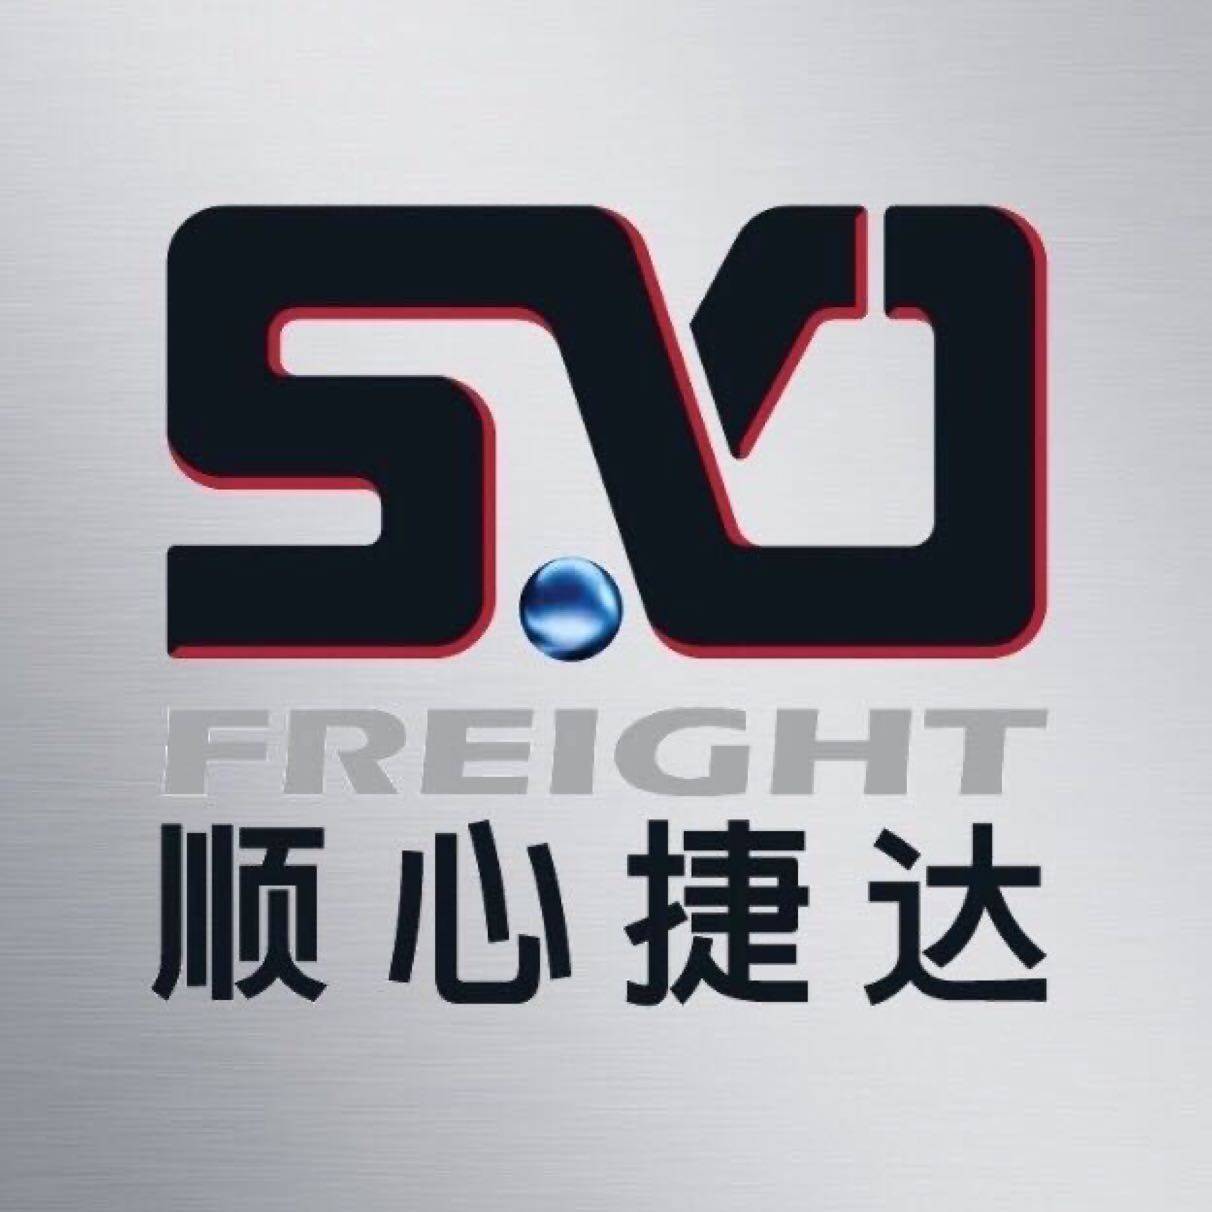 东莞市龙杰货运代理有限公司logo